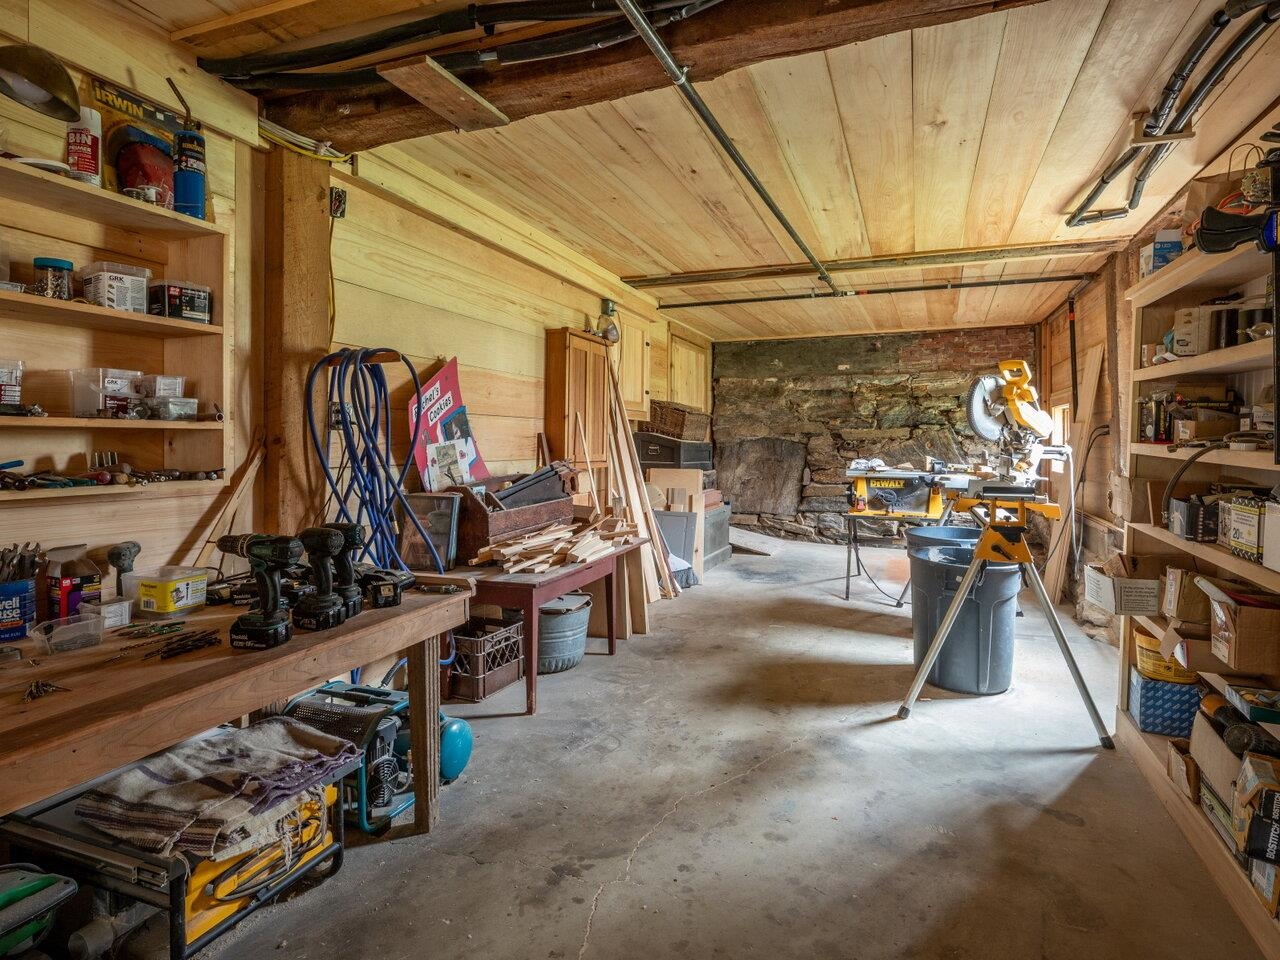 Workshop off garage/basement